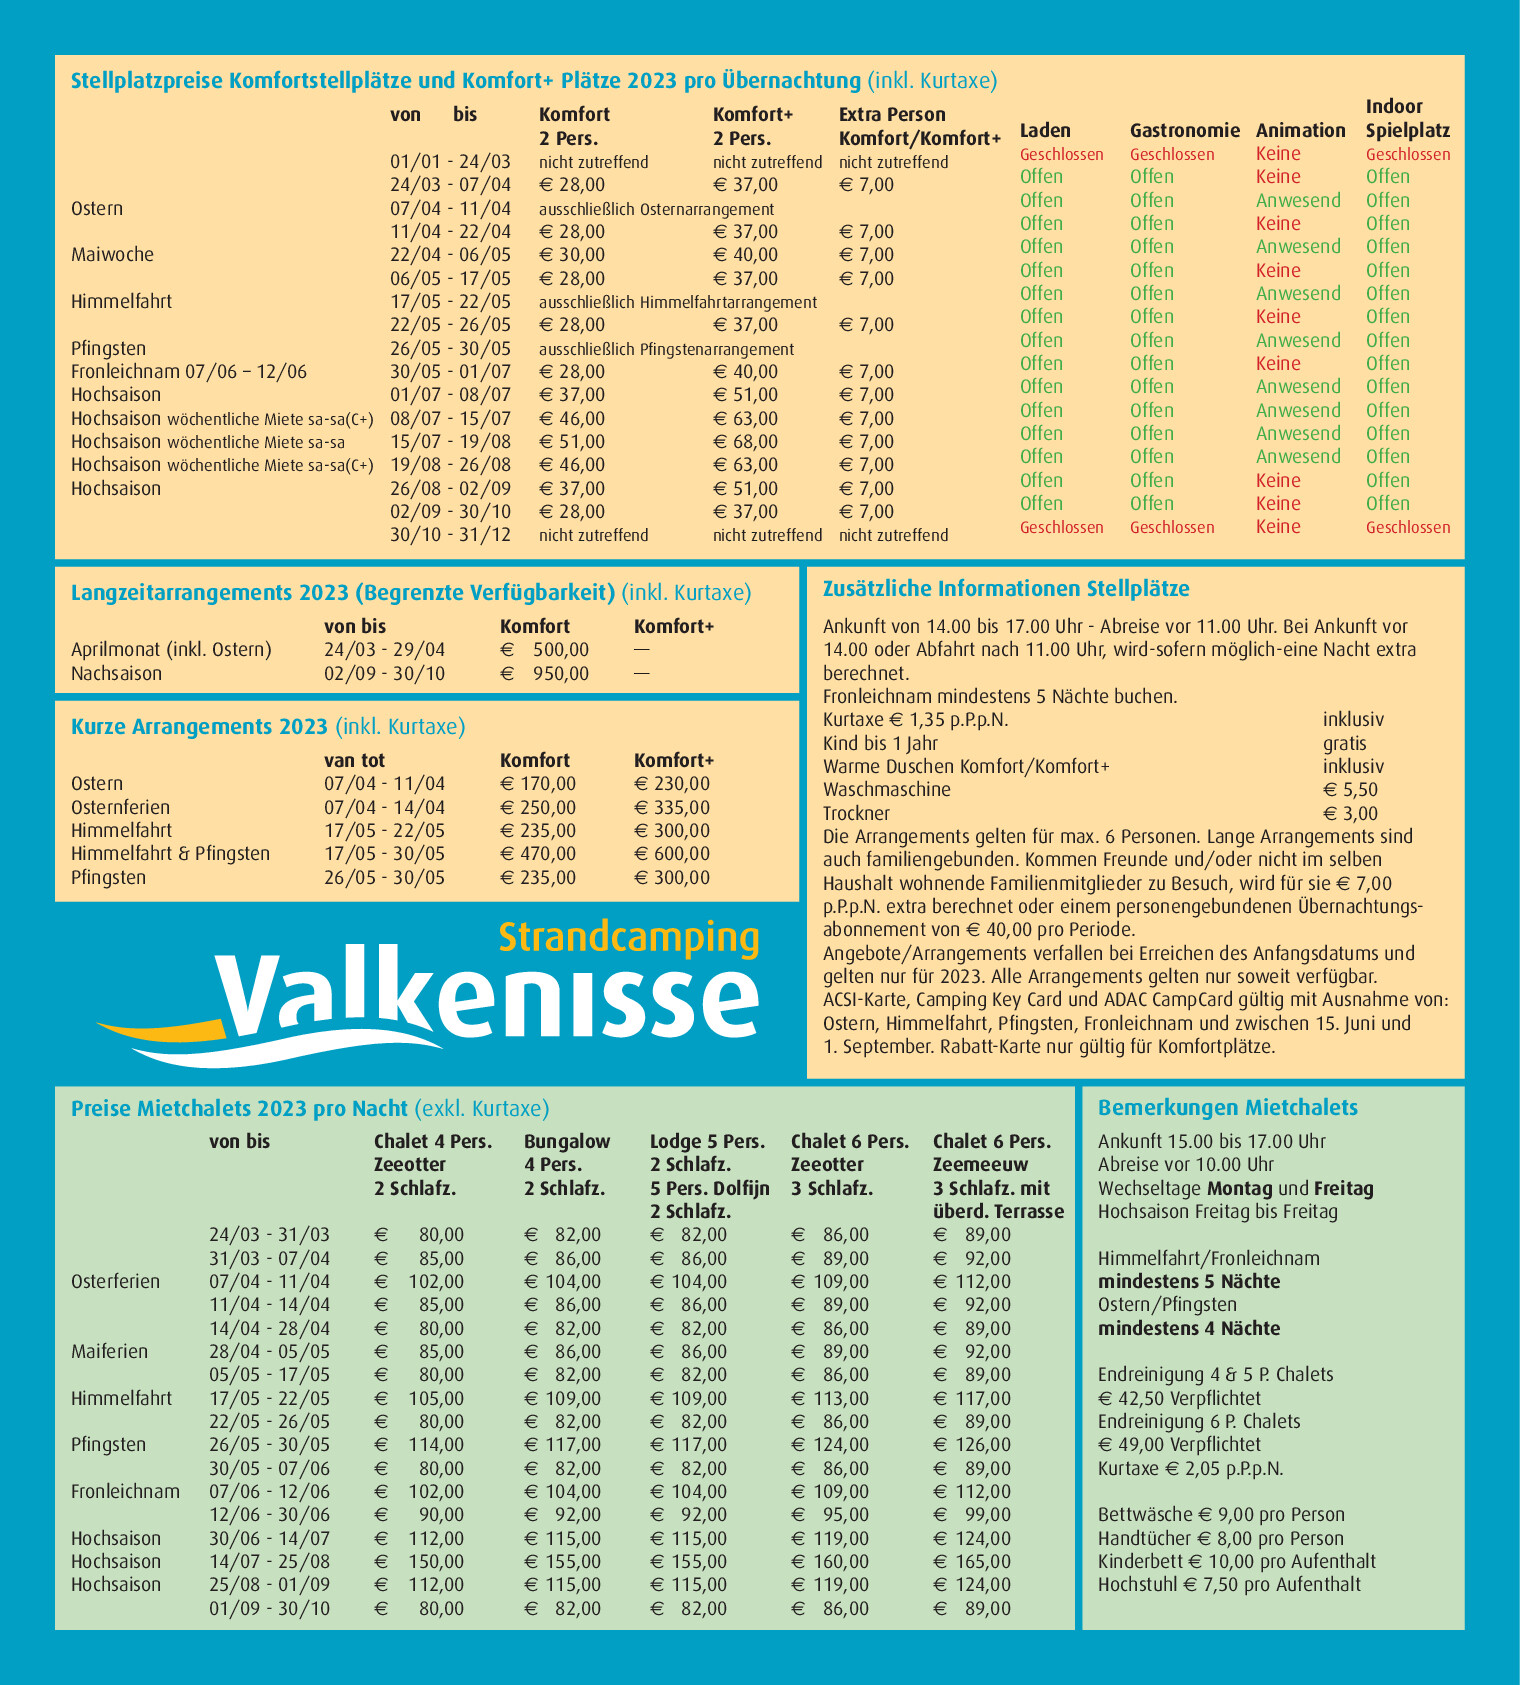 Valkenisse prijslijst los DE 2023